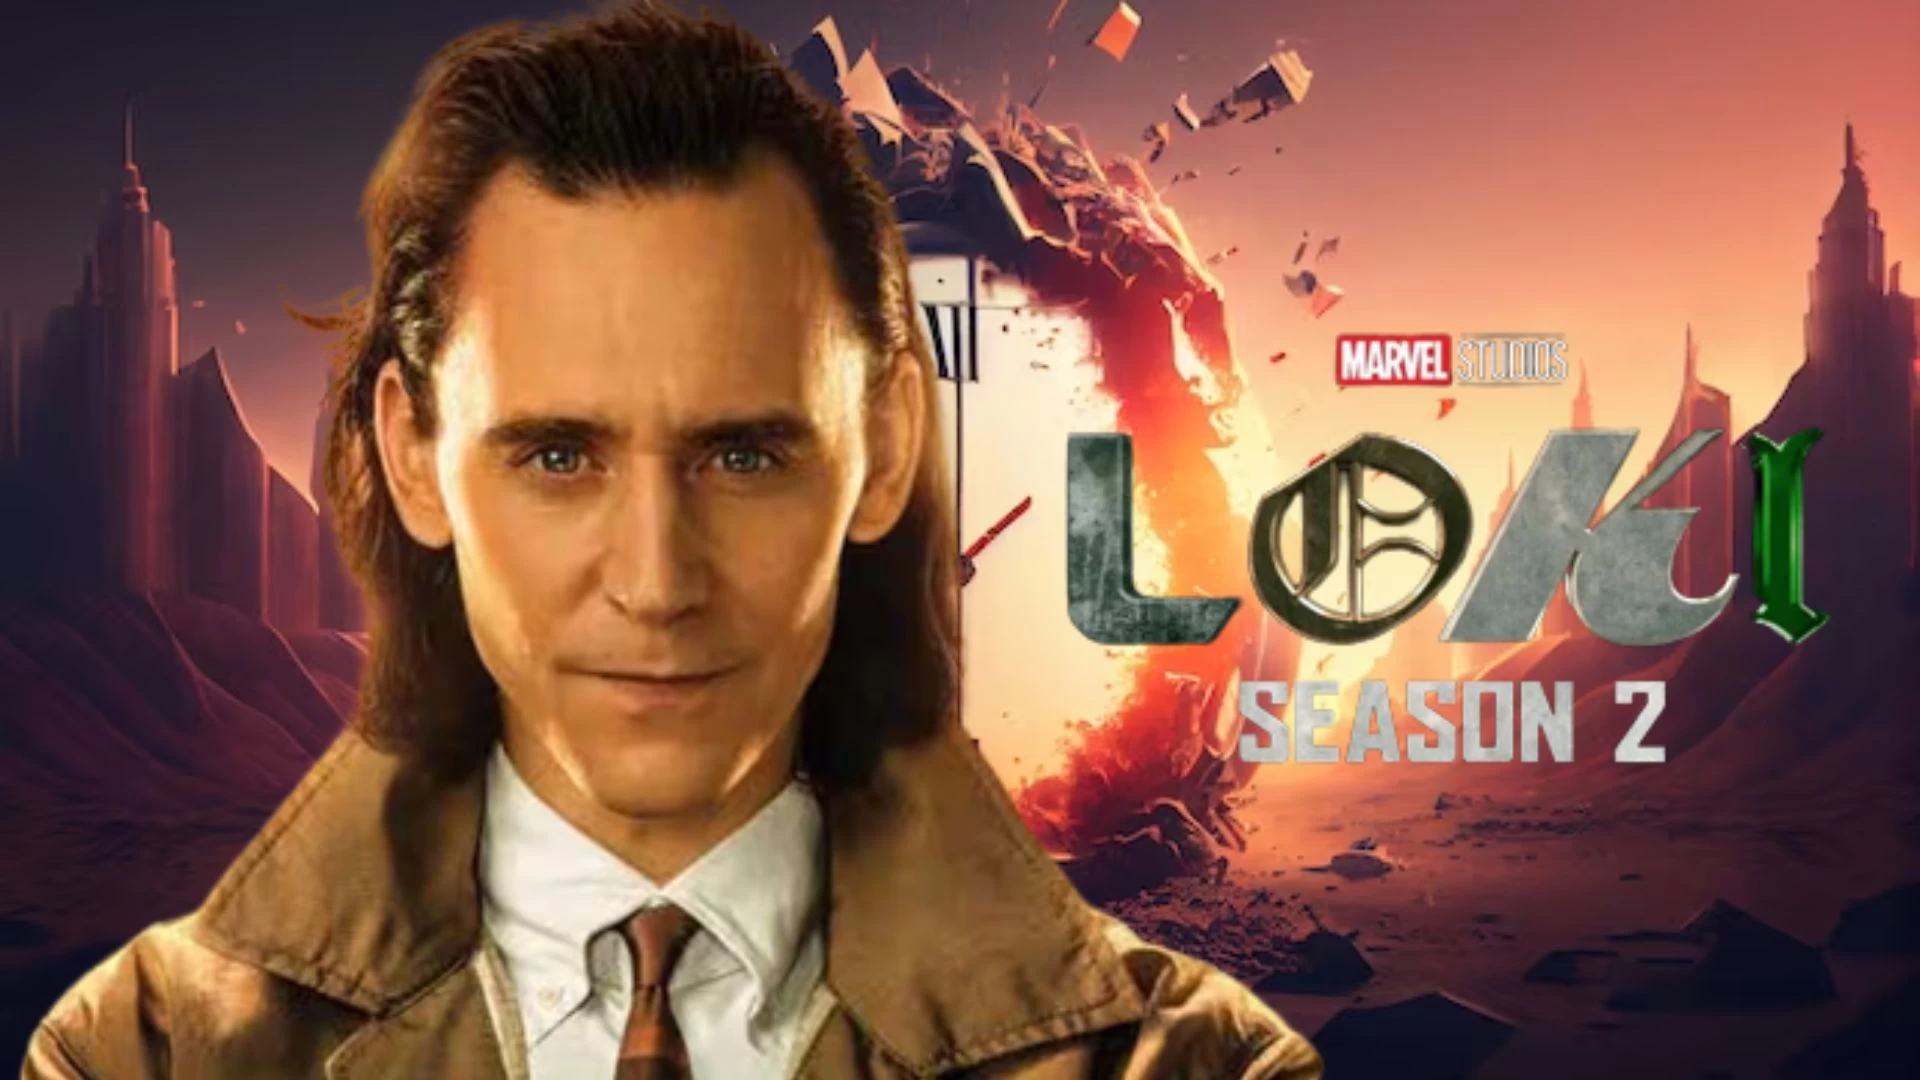 Is Loki Season 2 Based on a True Story? Loki Season 2 Plot, Cast and More